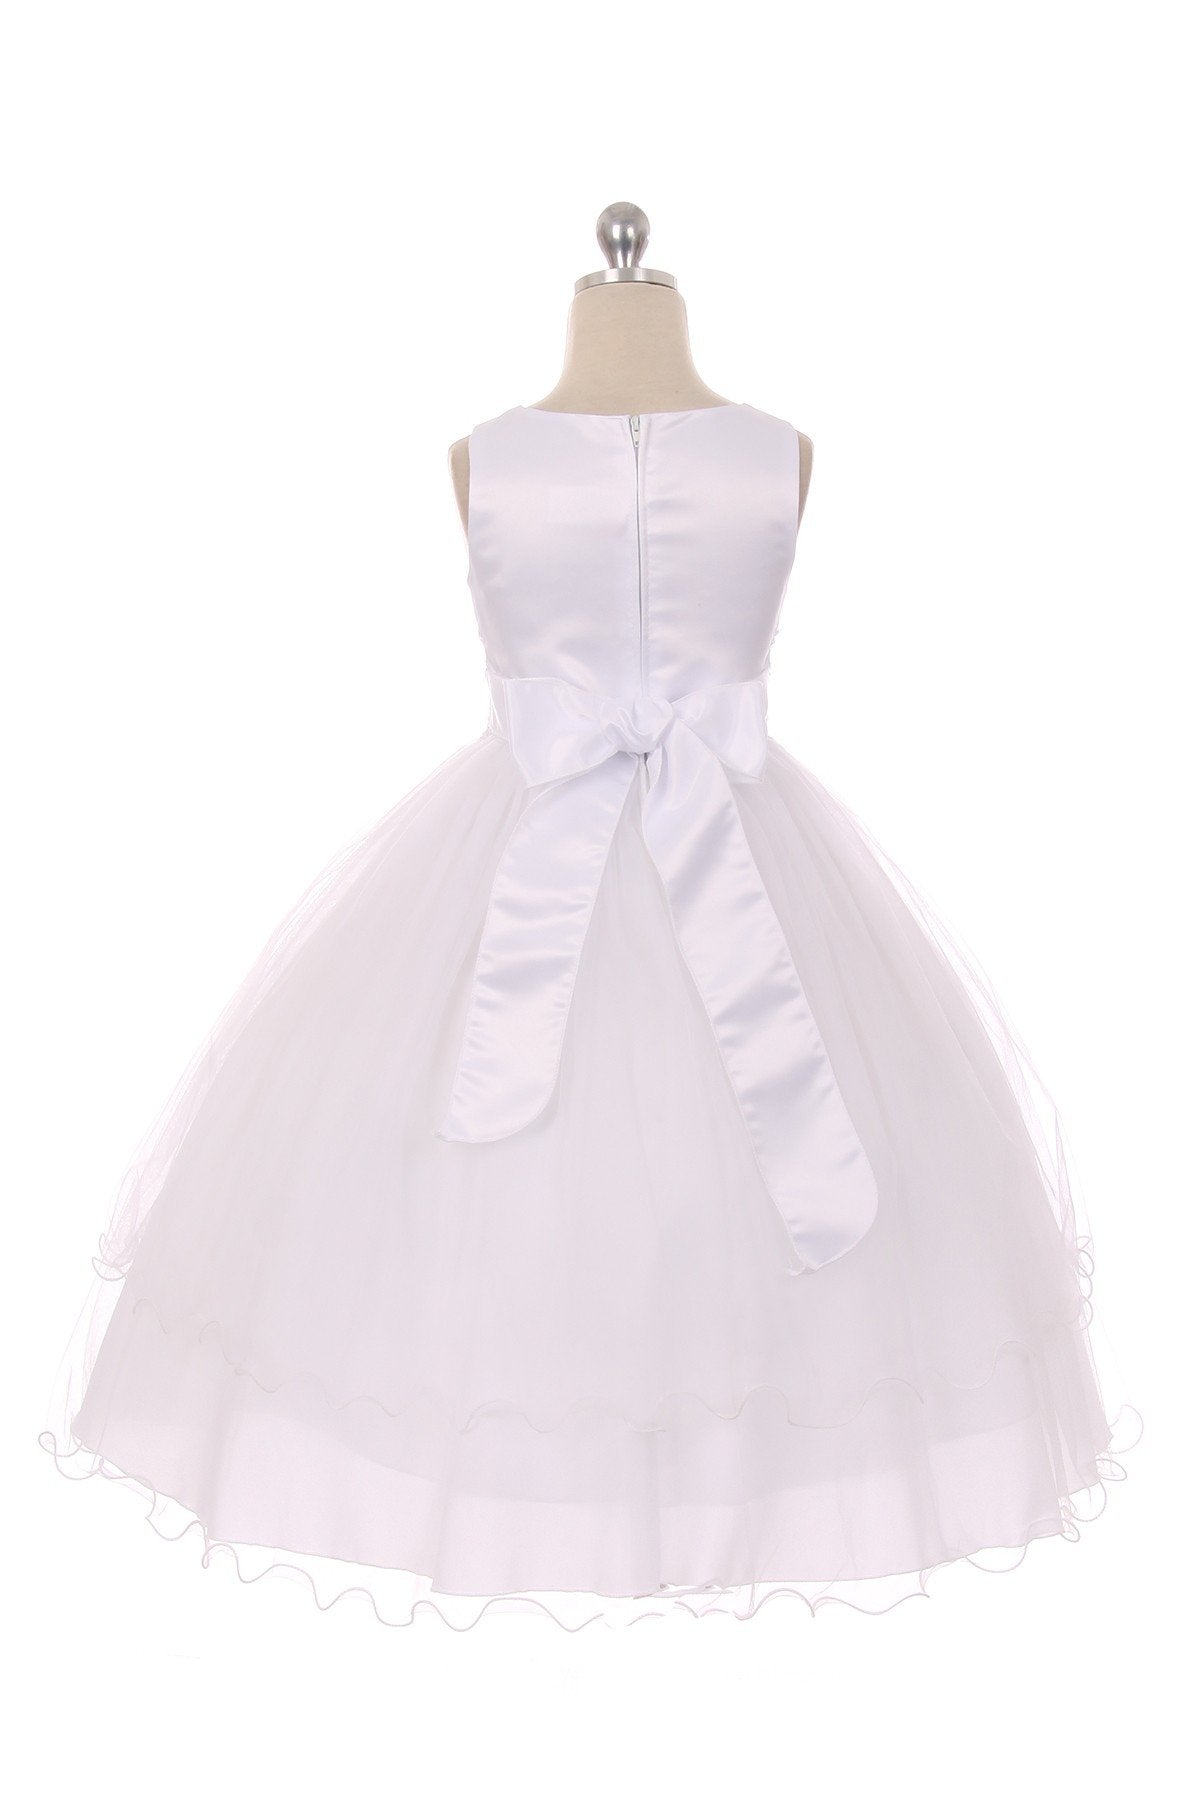 Dress - Lace Trim Long Tulle Dress